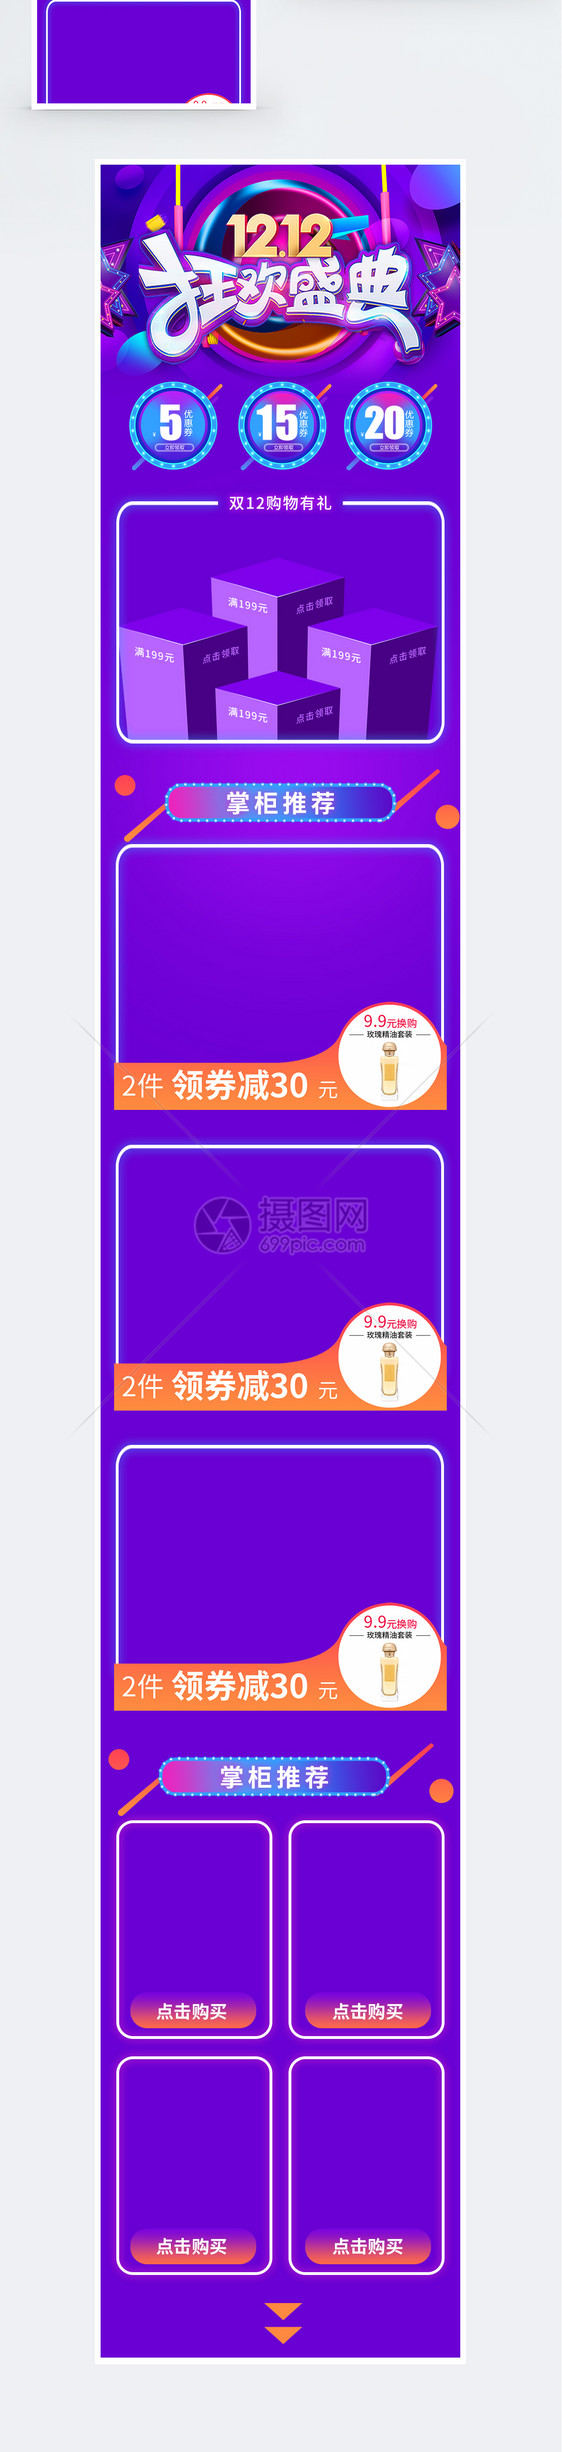 紫色双12狂欢盛典促销淘宝手机端模板图片